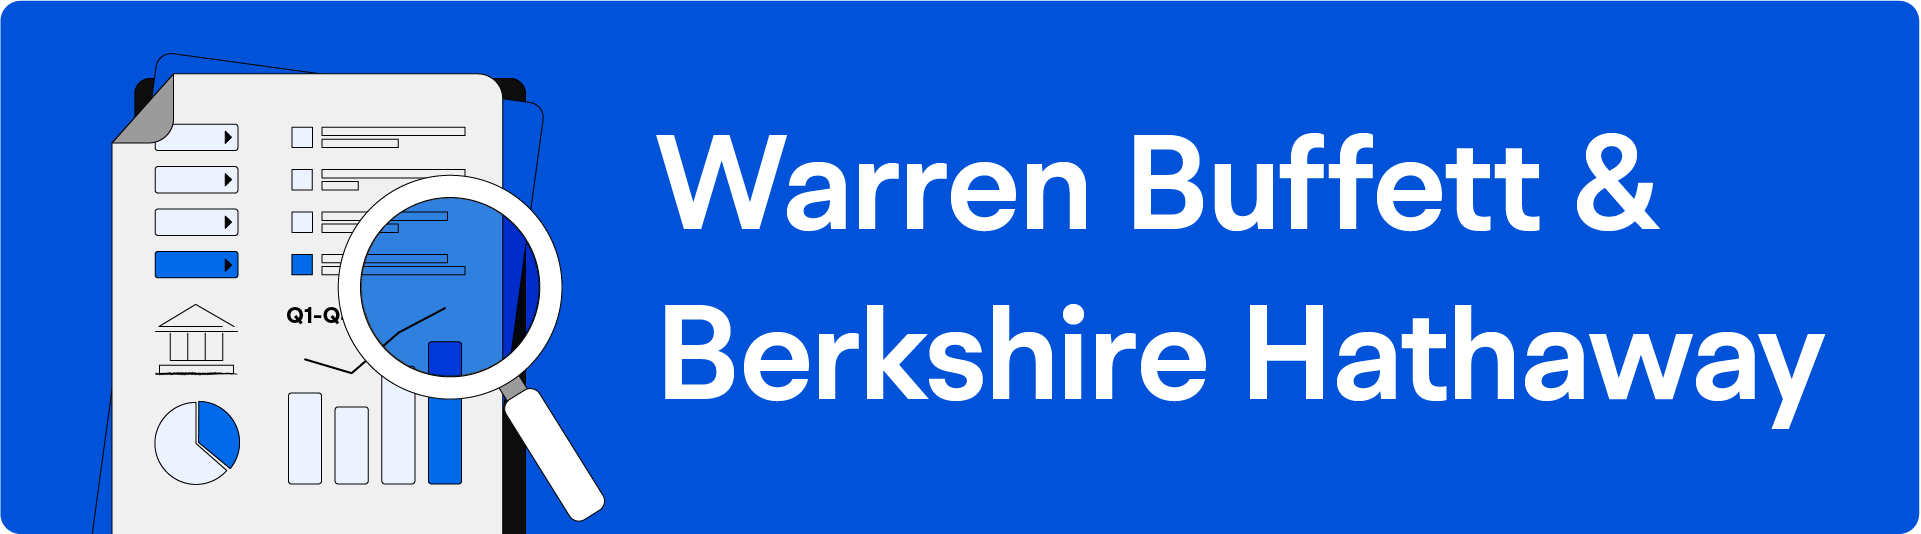 04 Warren Buffett & Berkshire Hathaway -1